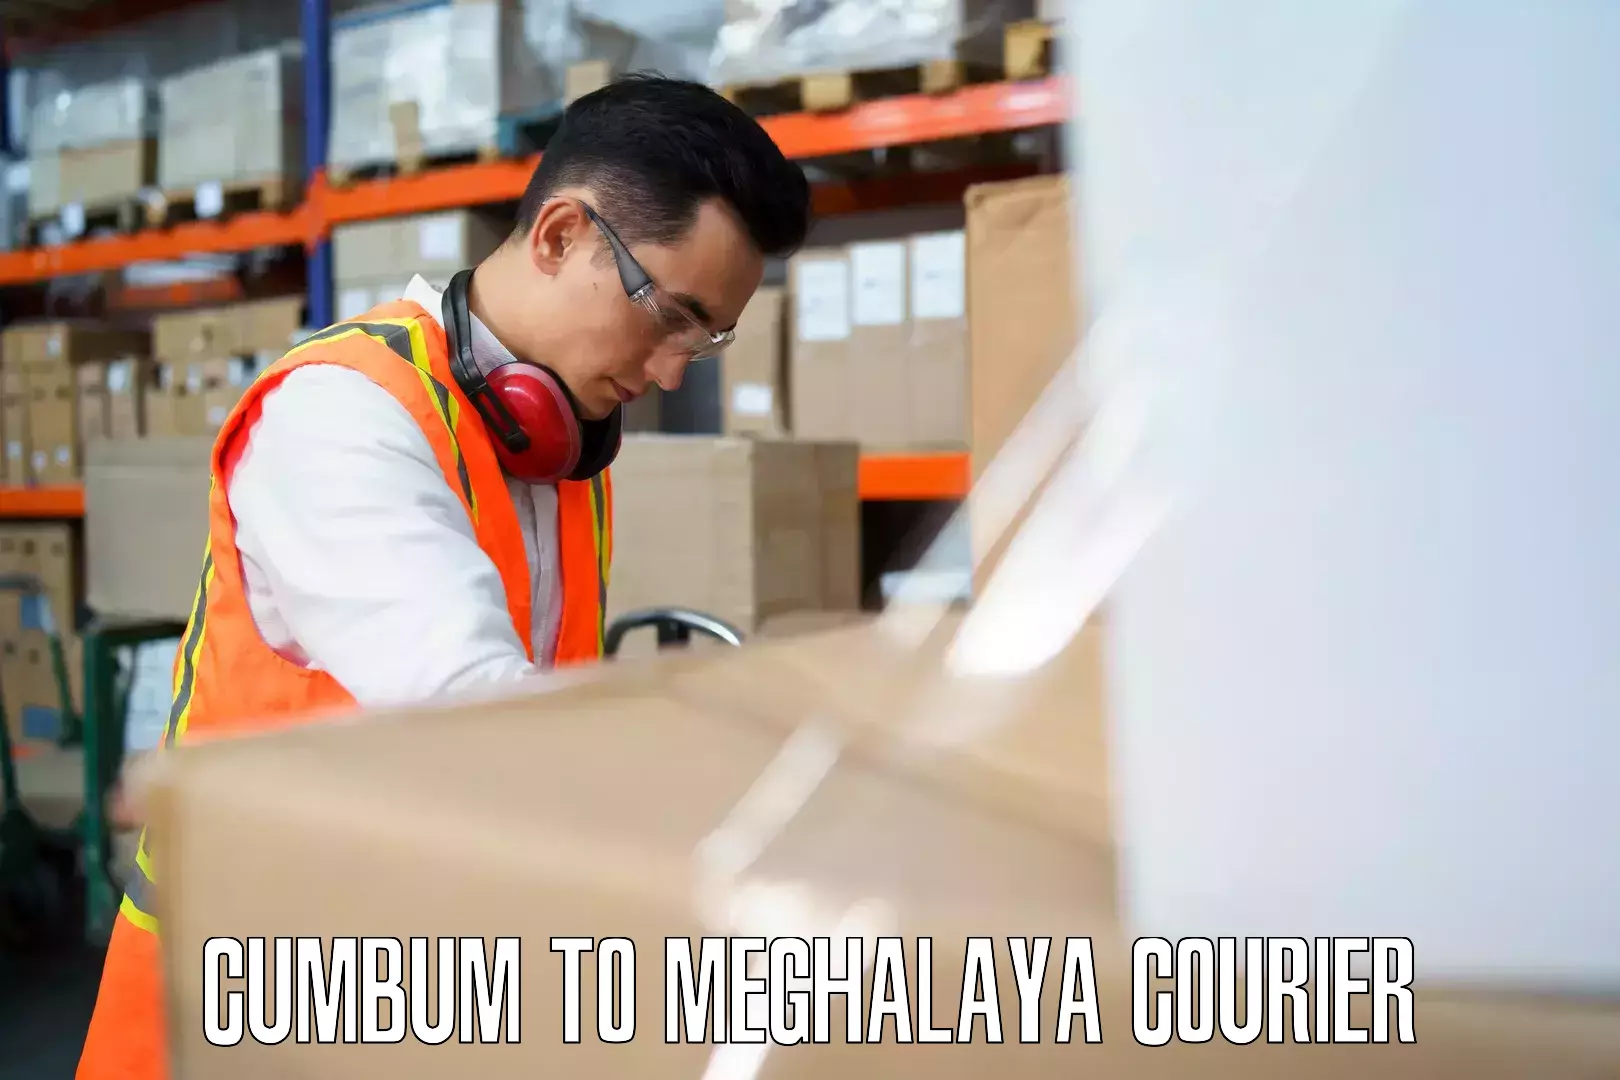 Emergency baggage service Cumbum to NIT Meghalaya